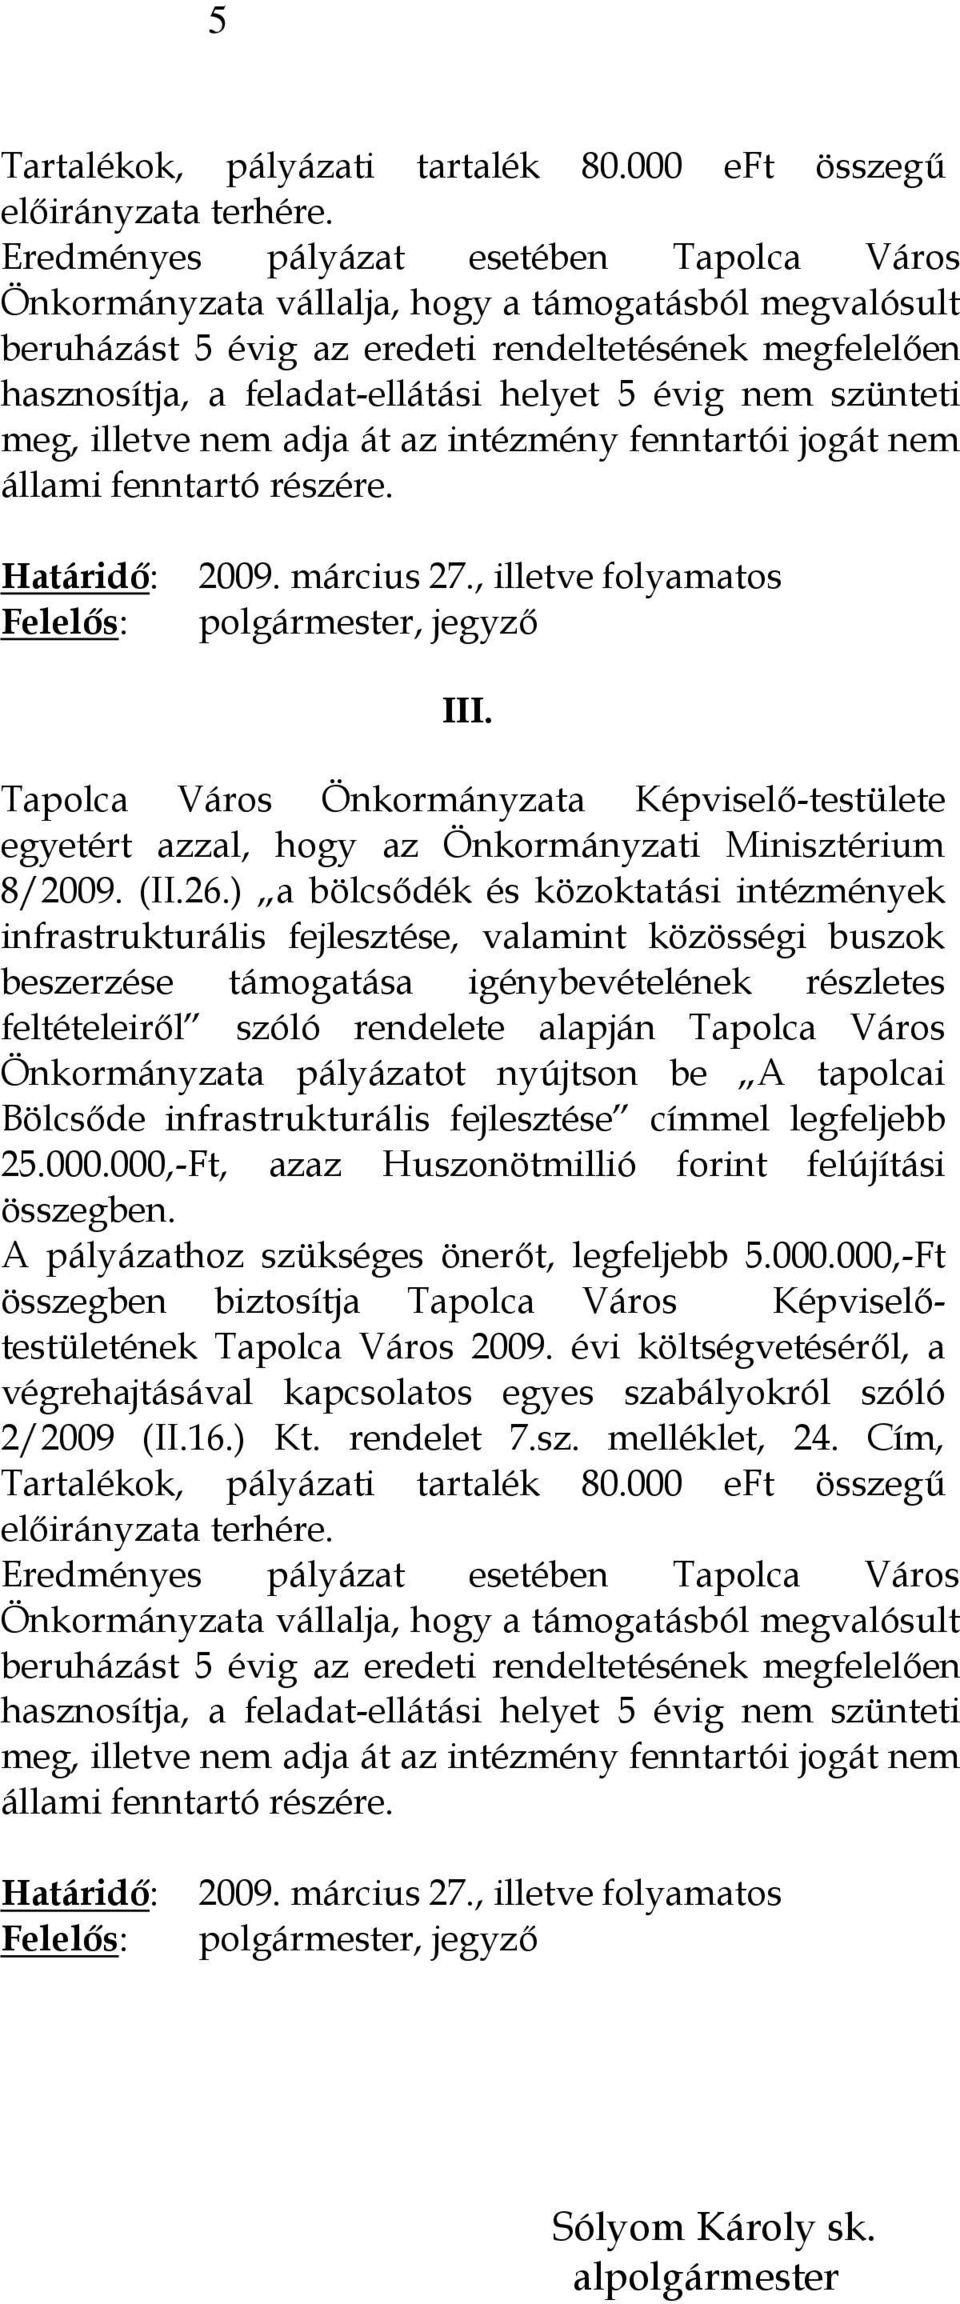 Önkormányzata pályázatot nyújtson be A tapolcai Bölcsőde infrastrukturális fejlesztése címmel legfeljebb 25.000.000,-Ft, azaz Huszonötmillió forint felújítási összegben.